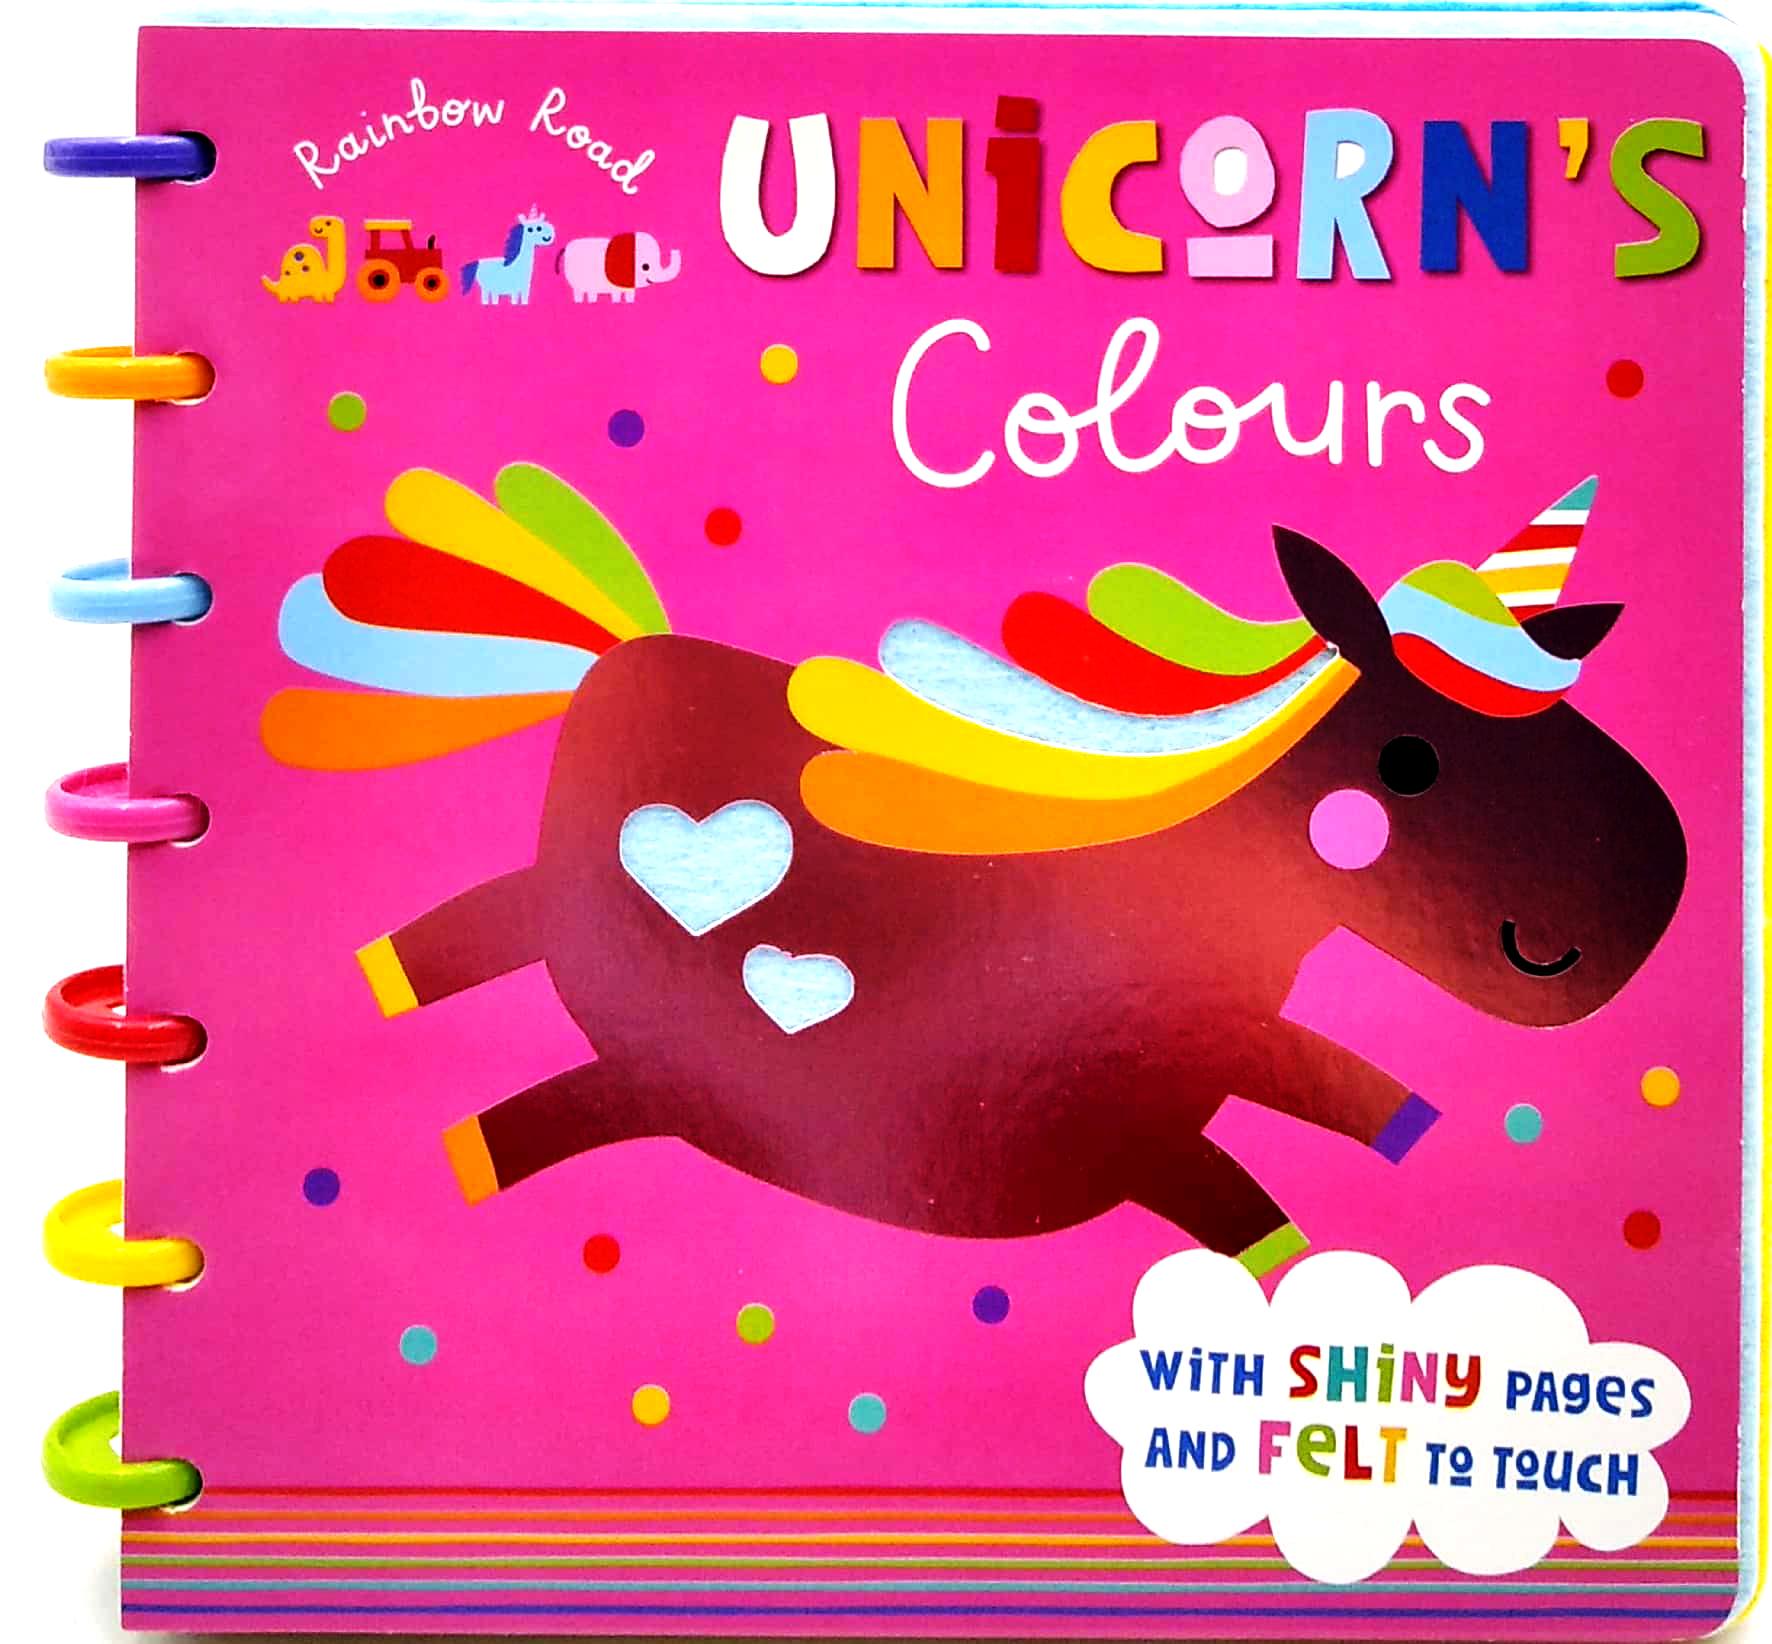 Rainbow Road Unicorn's Colours